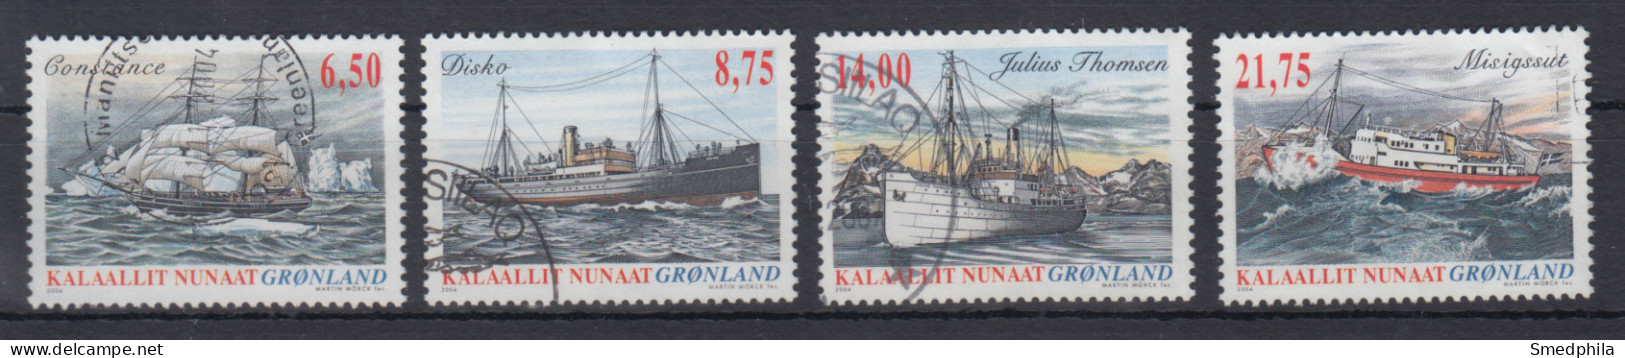 Greenland 2004 - Michel 423-426 Used - Usati